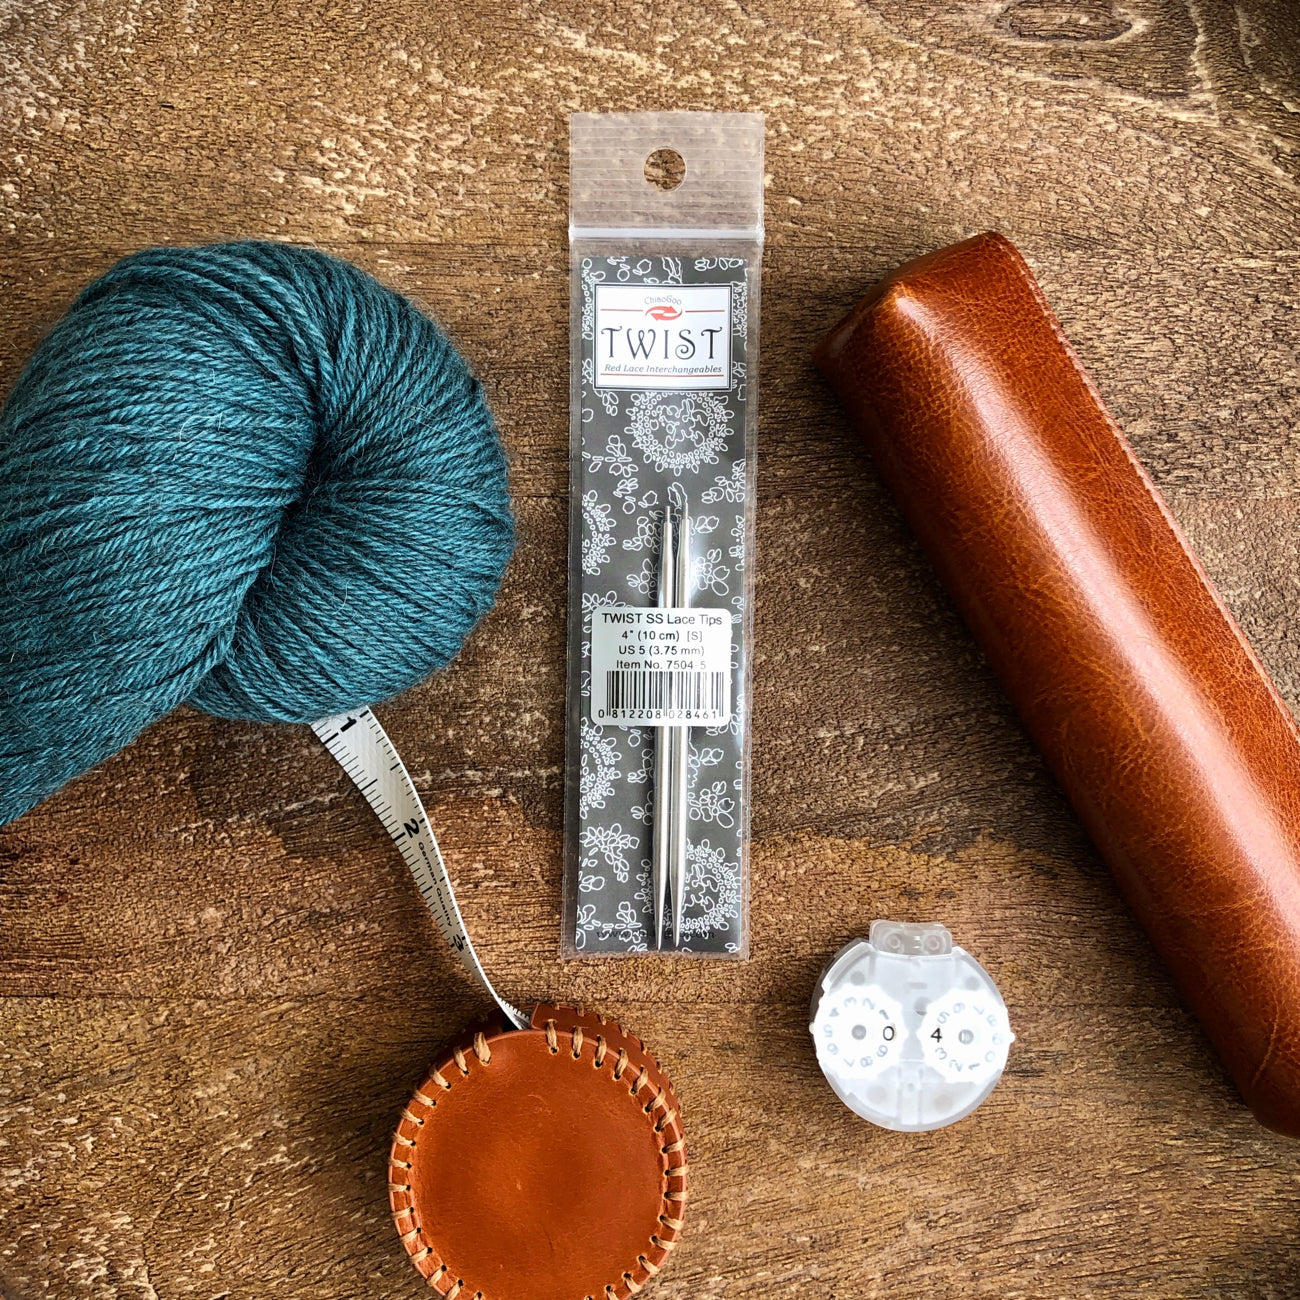 Chiaogoo TWIST Lace Needle Tips - Knitting Needles